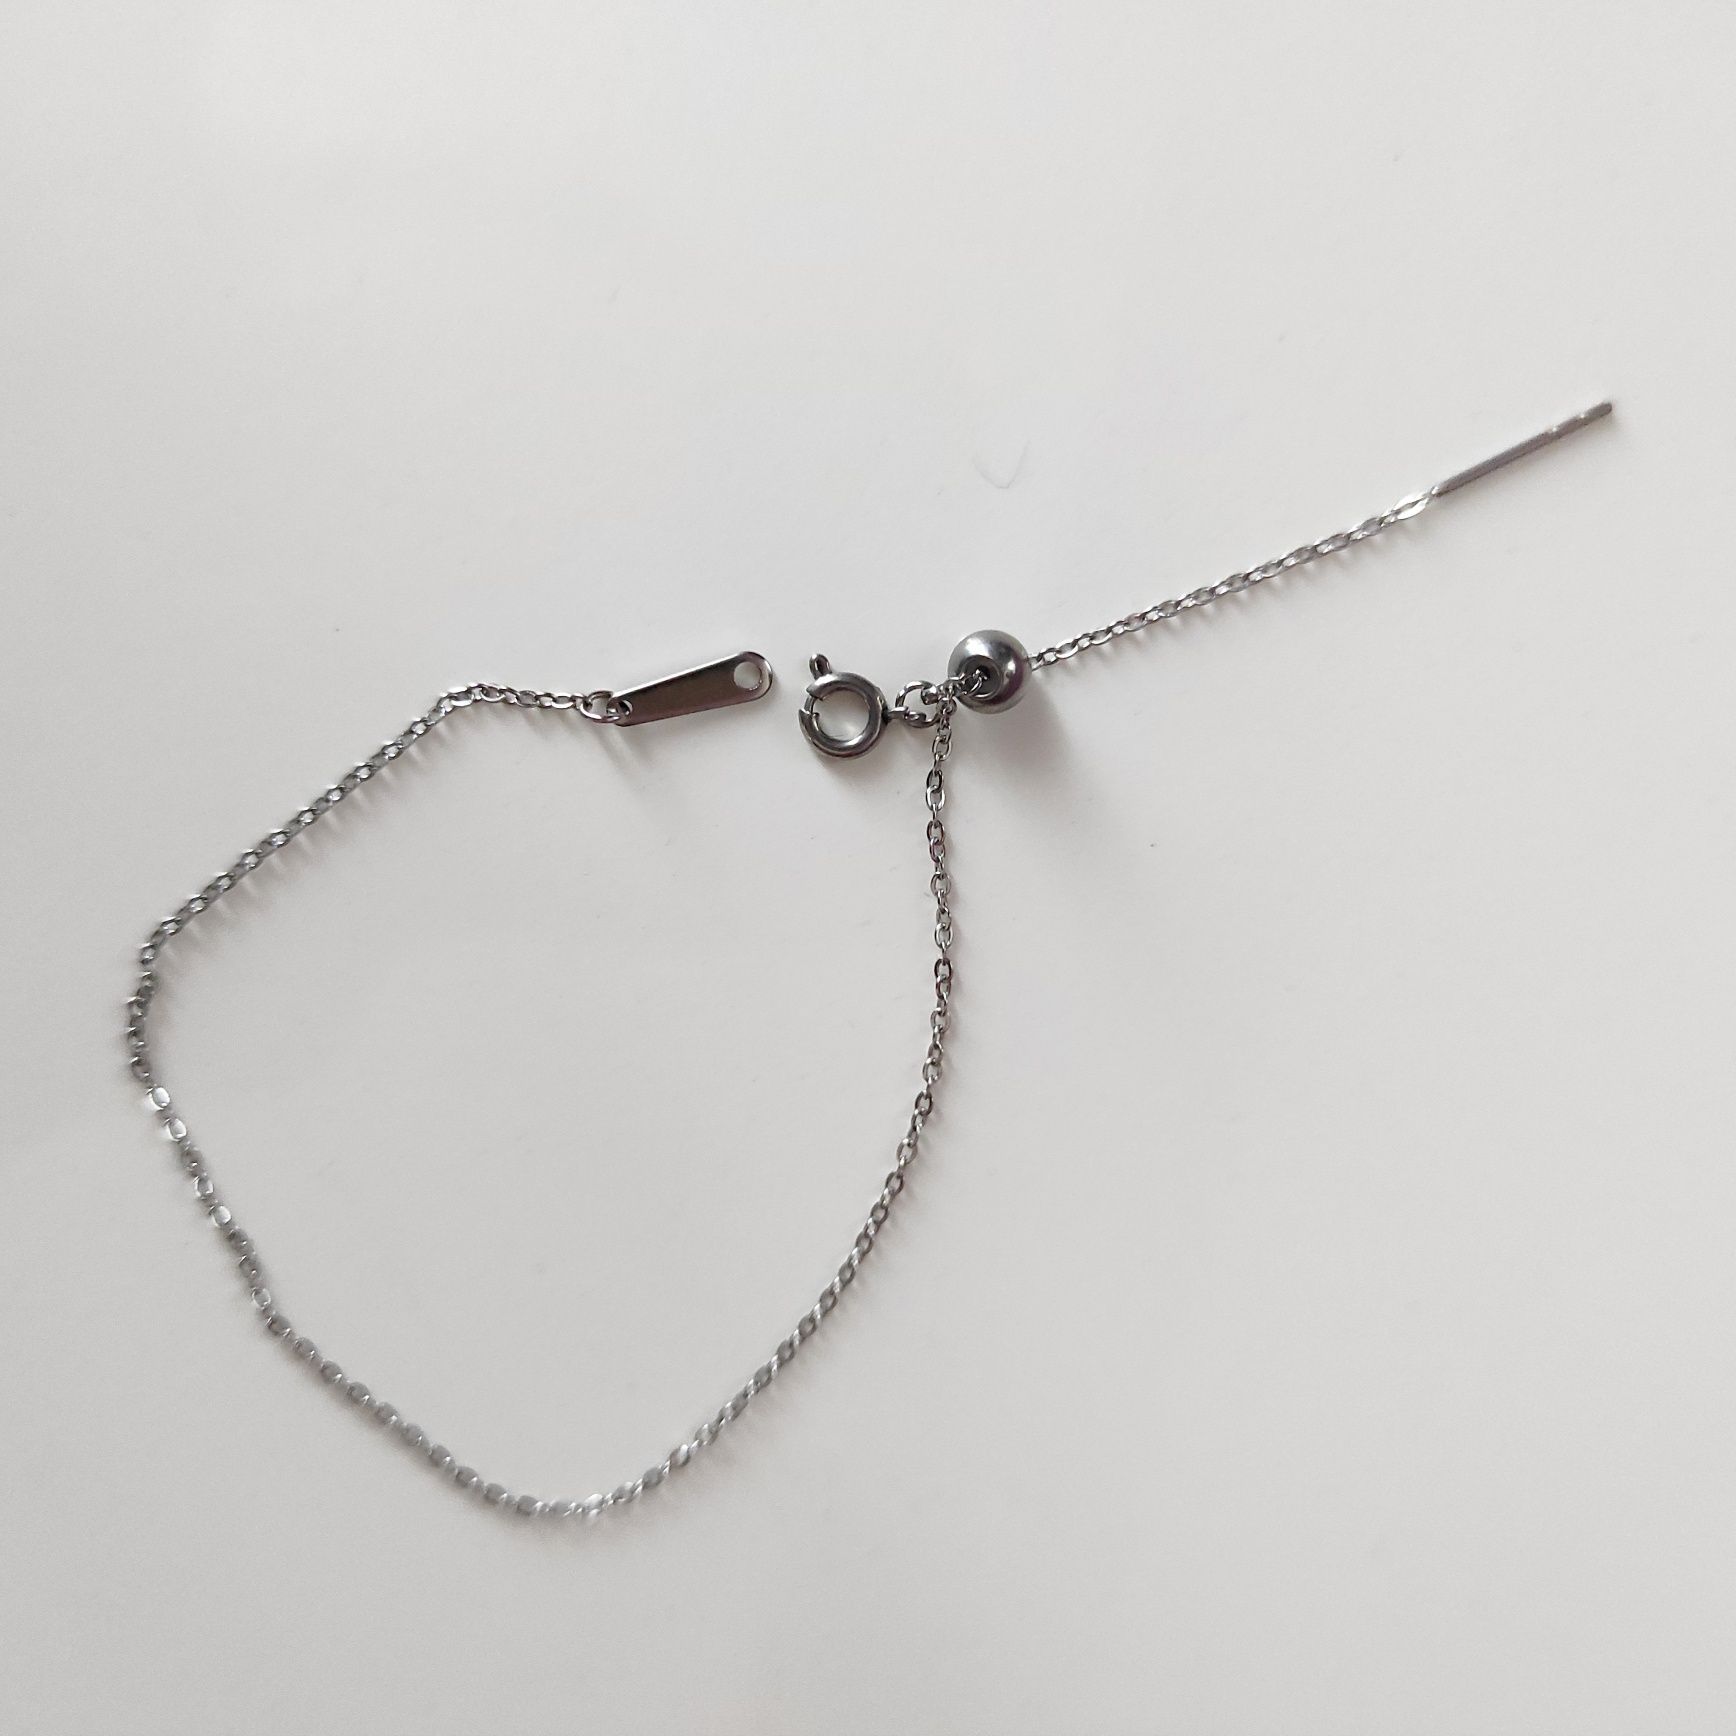 Delikatna minimalistyczna bransoletka w kolorze srebrnym, nowa